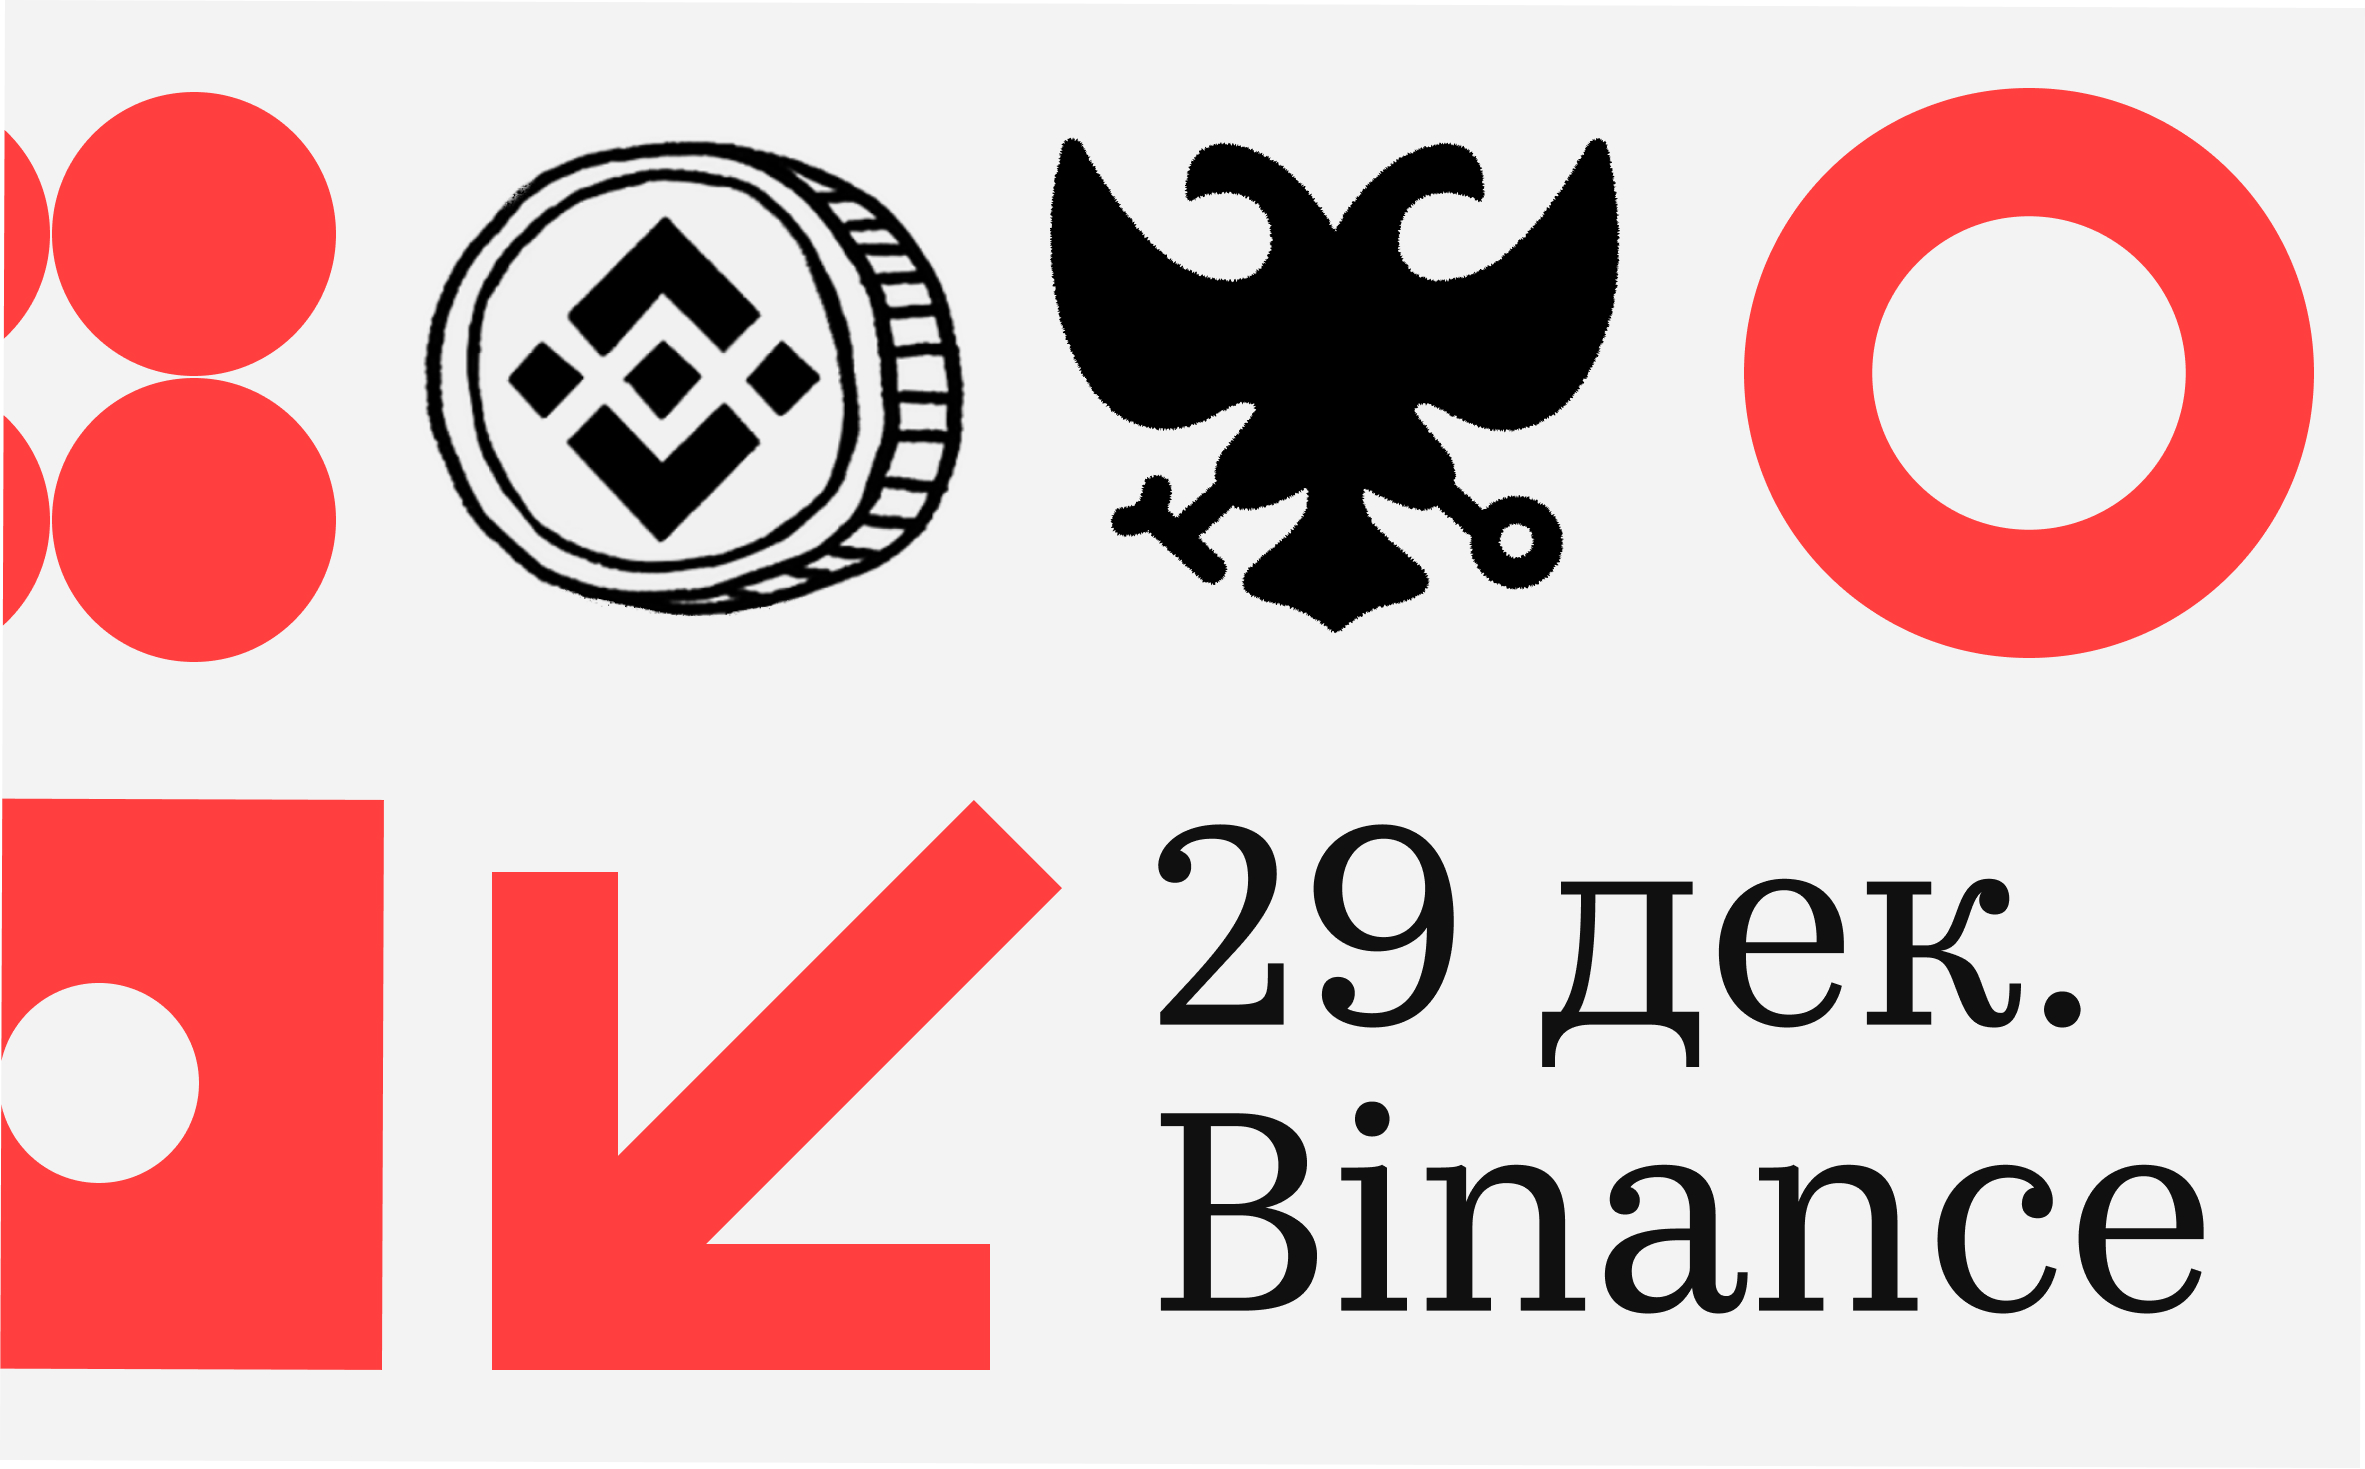 Криптобиржа Binance предупредила о необходимости вывода средств россиян до 29 декабря :: РБК.Крипто